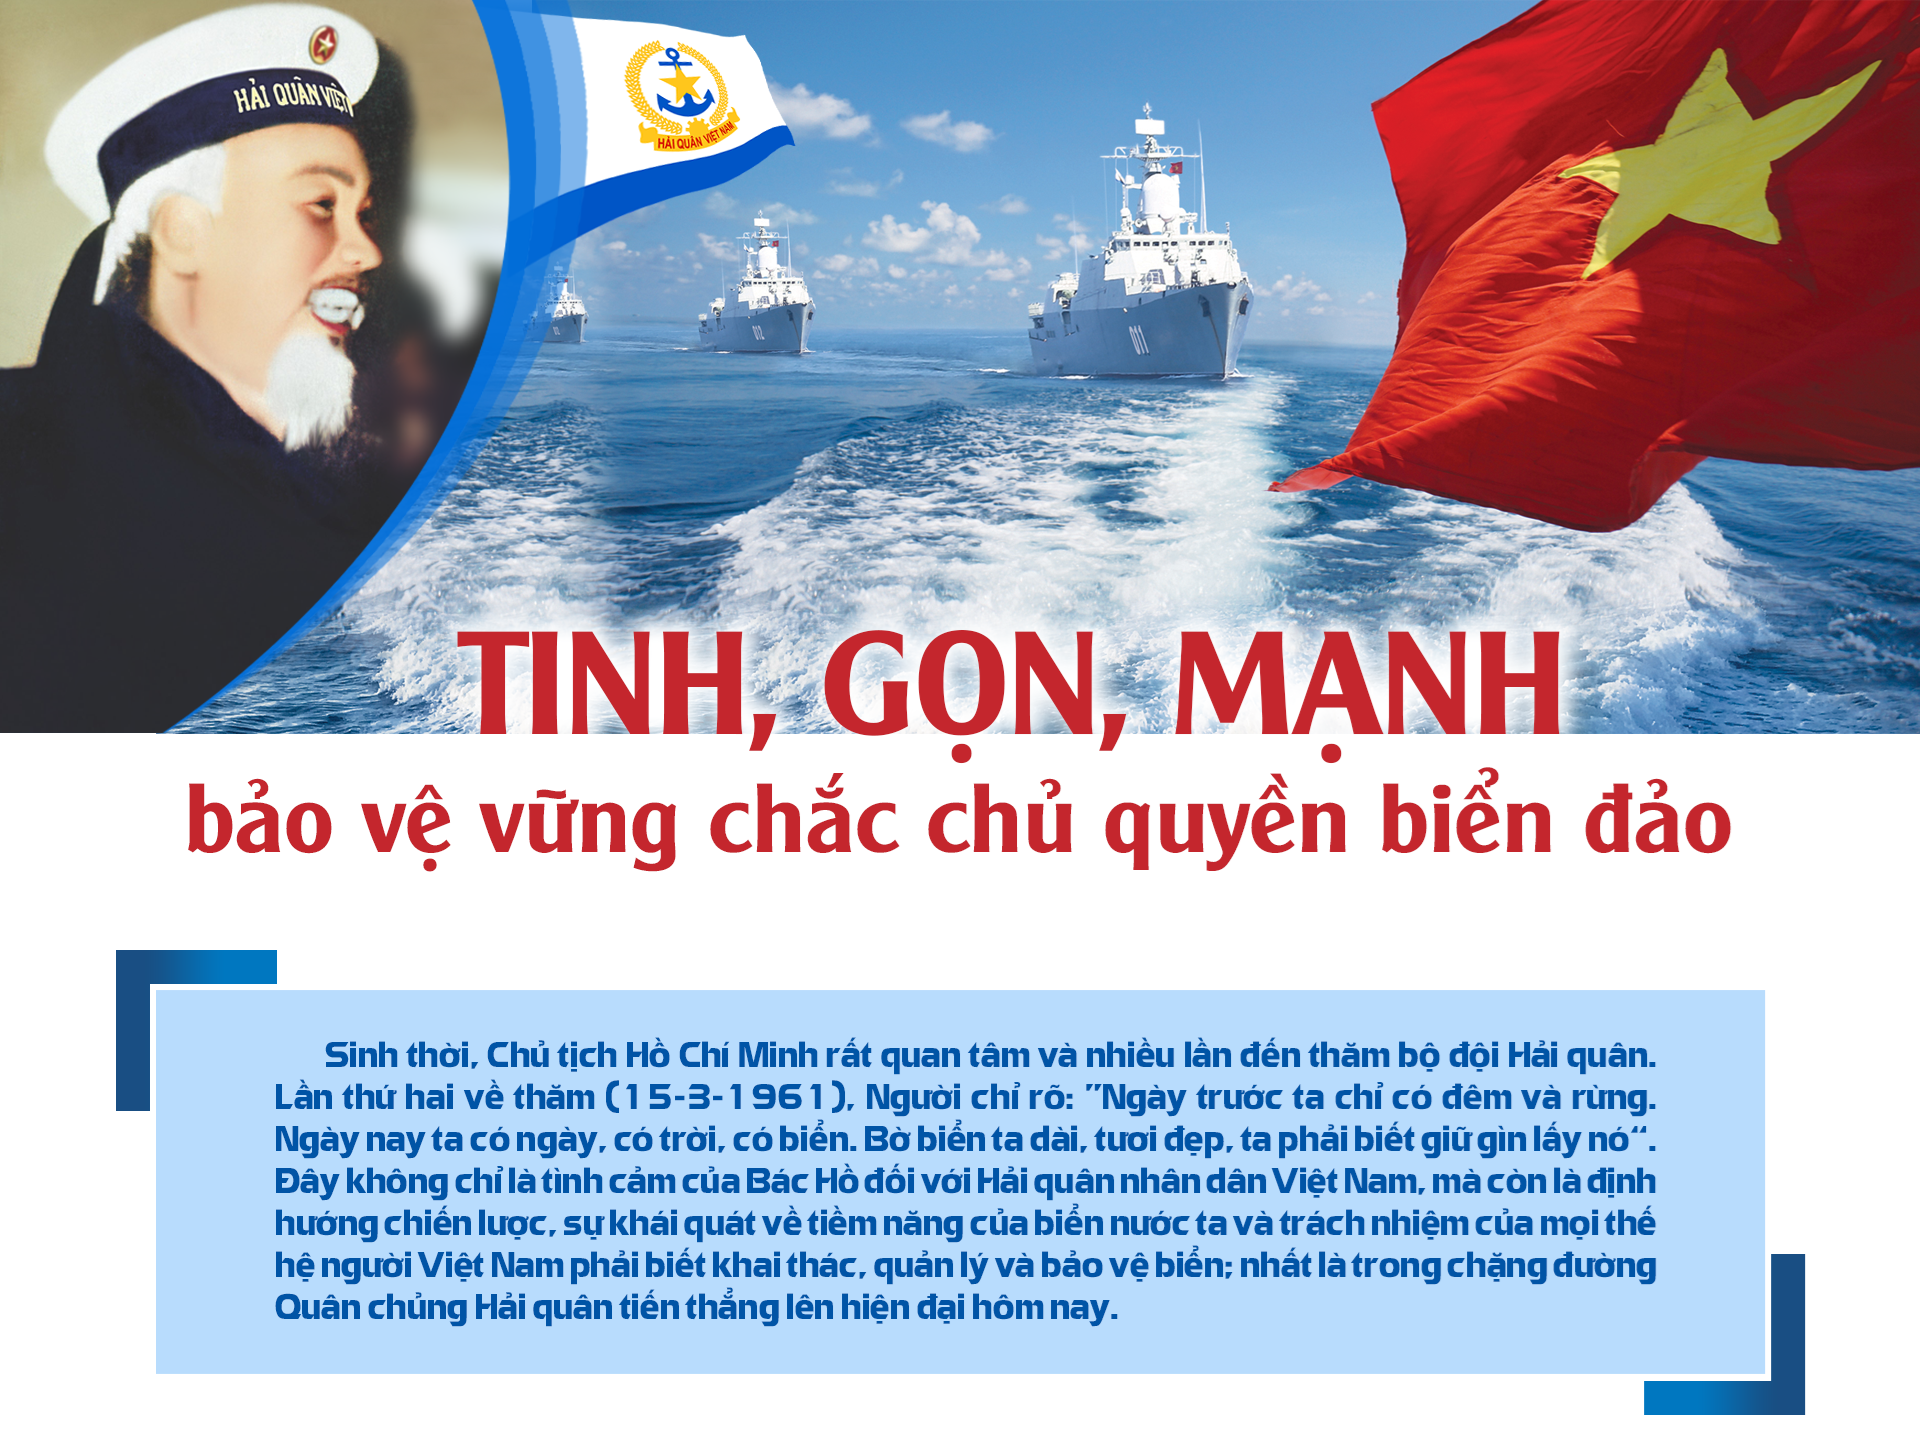 Khám phá những hình ảnh độc đáo về chủ quyền biển đảo Việt Nam để hiểu rõ hơn về quyền lợi lãnh thổ của đất nước.